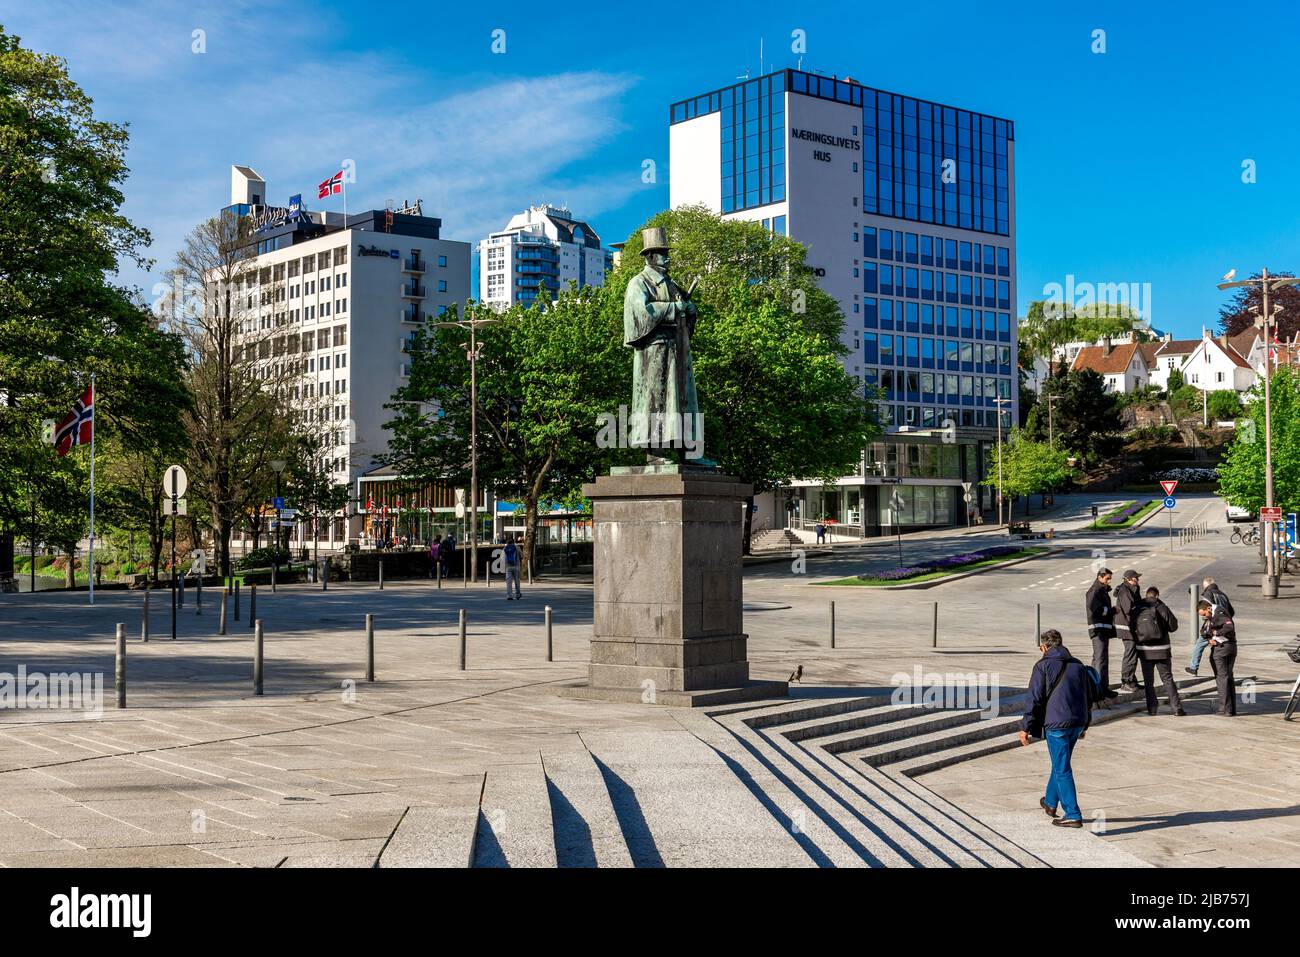 La piazza principale della città di Stavanger nel centro della mattina presto il giorno della Costituzione, Norvegia, 17 maggio 2018 Foto Stock